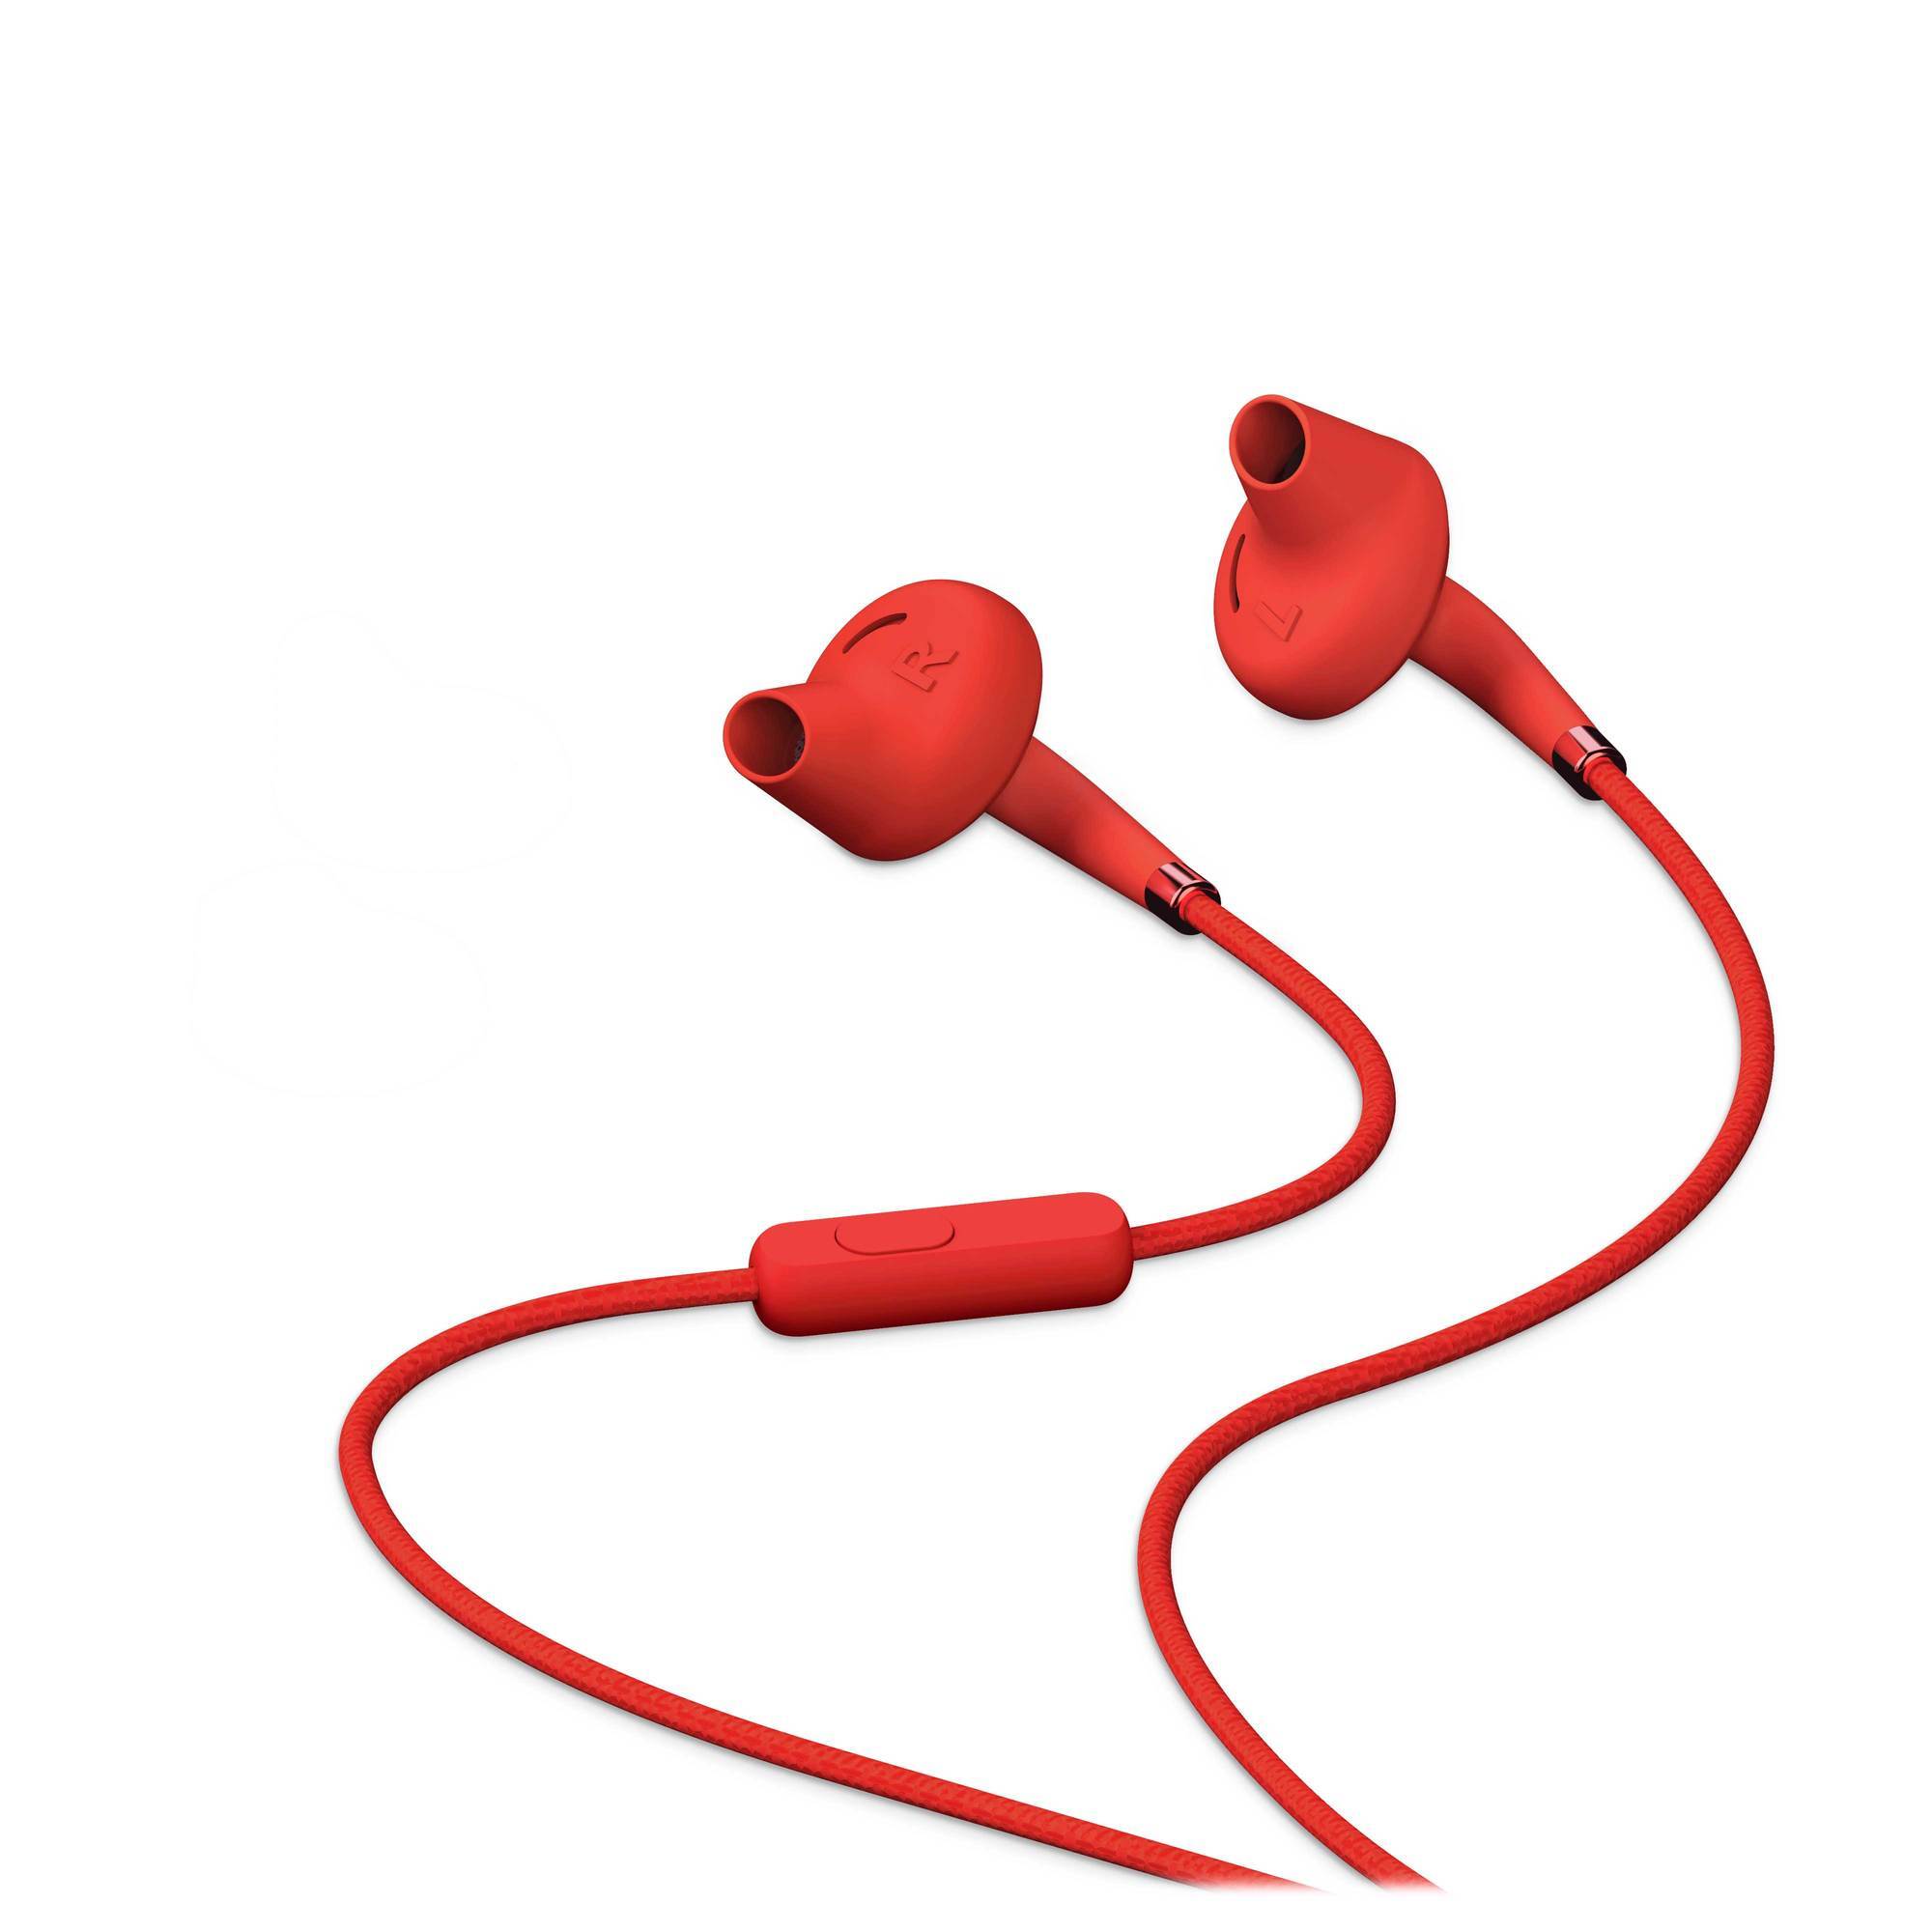 In-ear design earphones for better ergonomics